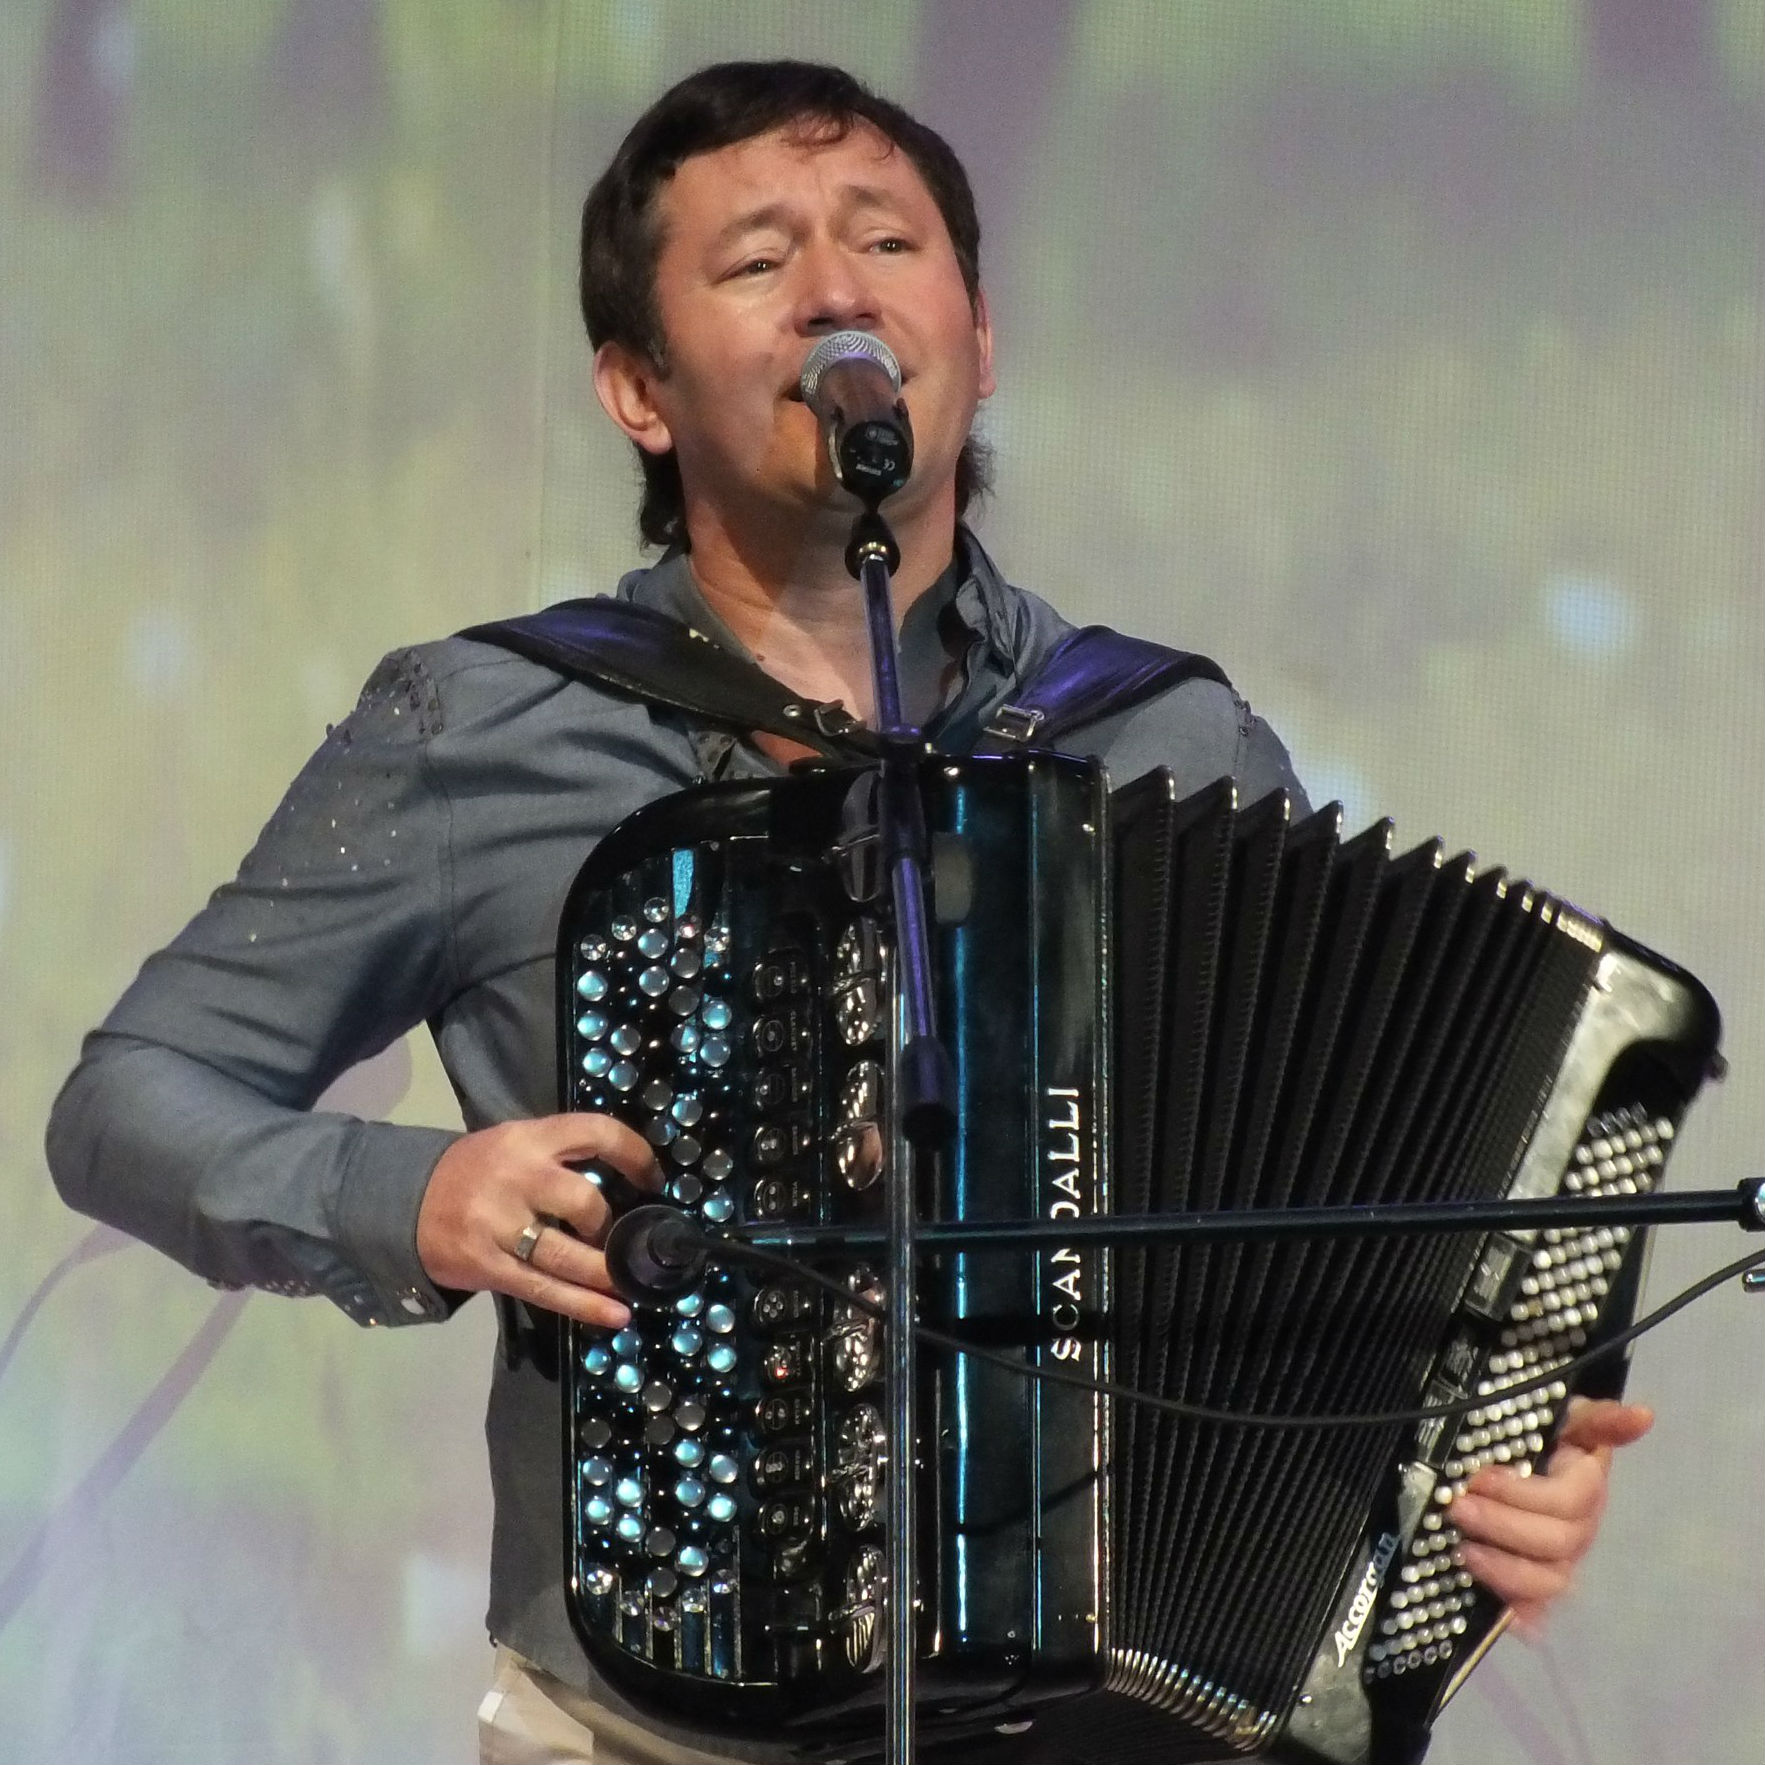 Татарские песни галимова